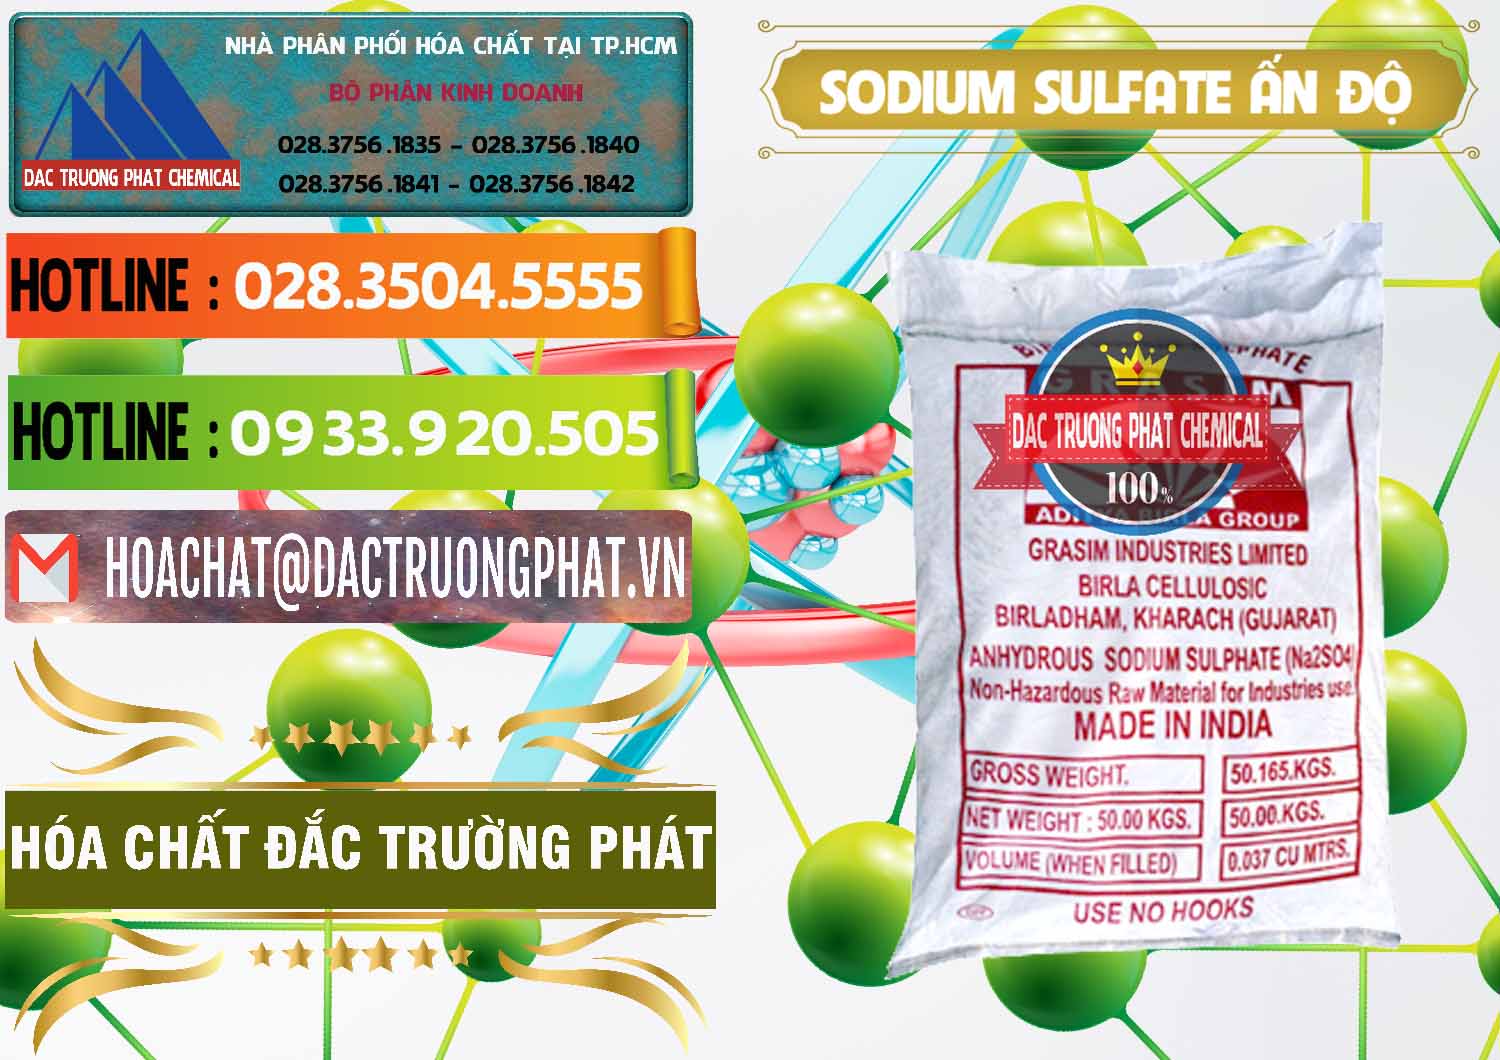 Nơi chuyên cung ứng và bán Sodium Sulphate - Muối Sunfat Na2SO4 Aditya Birla Grasim Ấn Độ India - 0462 - Nơi chuyên bán ( phân phối ) hóa chất tại TP.HCM - cungcaphoachat.com.vn